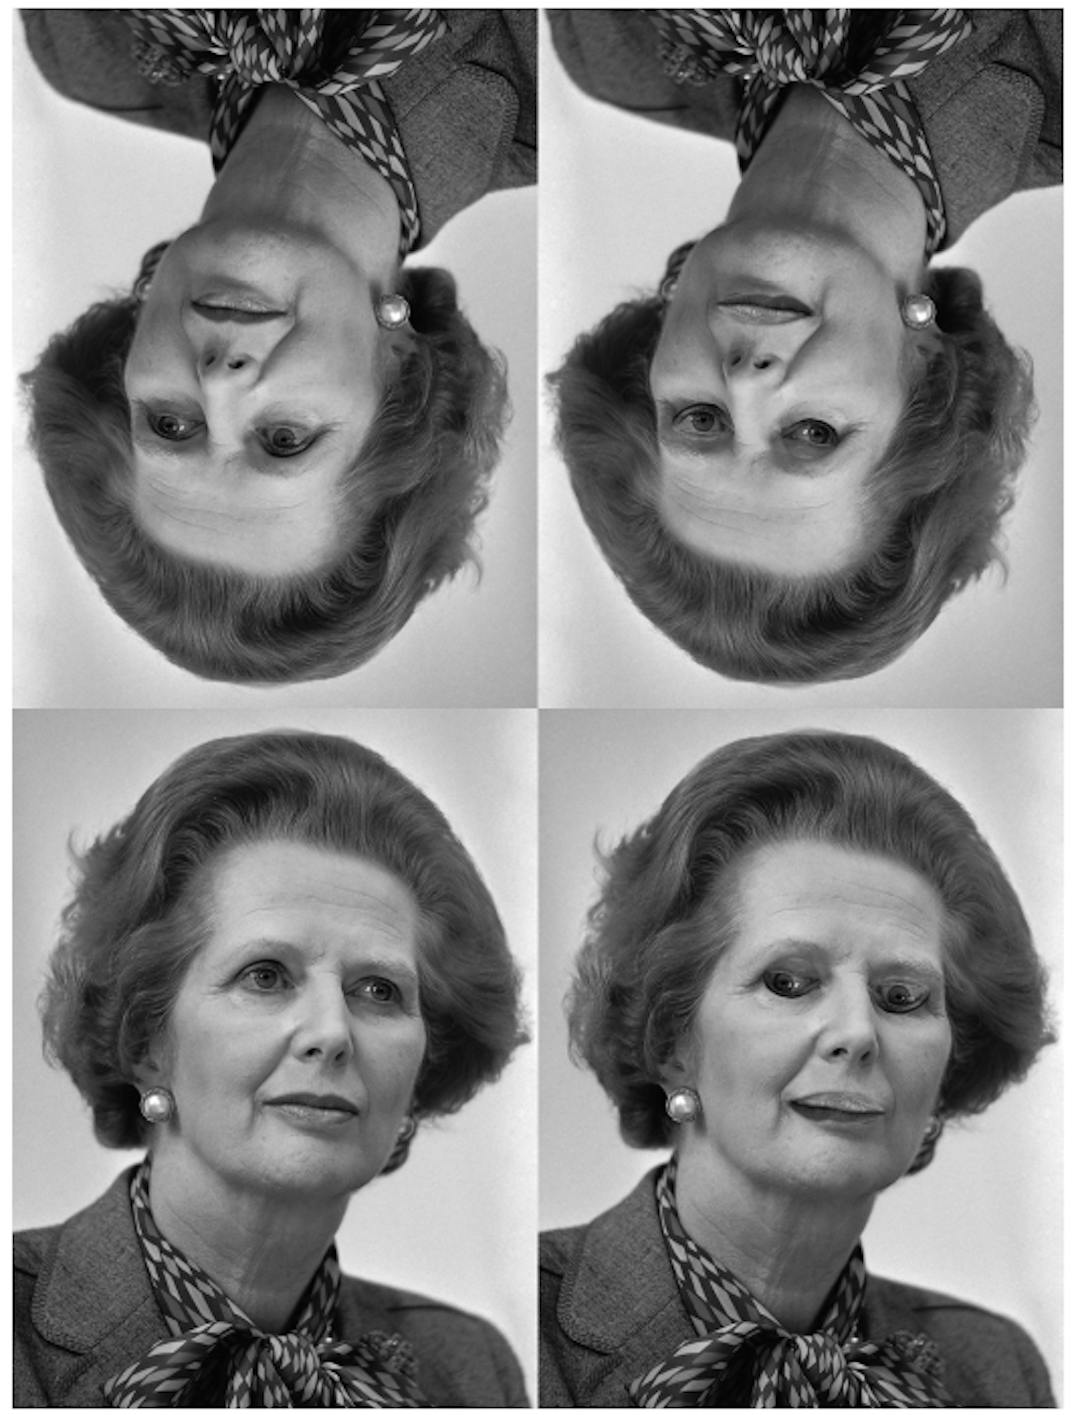 Abbildung 4. Die Margaret-Thatcher-Illusion [31]: Die Gesichter in der oberen Reihe sind umgekehrte Versionen der Gesichter in der unteren Reihe. Die Umkehrung von Augen und Mund unten rechts ist deutlich zu erkennen, wenn das Gesicht aufrecht steht, aber nicht, wenn es umgekehrt ist. (Quelle: Rob Bogaerts/Anefo https://commons.wikimedia.org/w/index.php? curid=79649613))